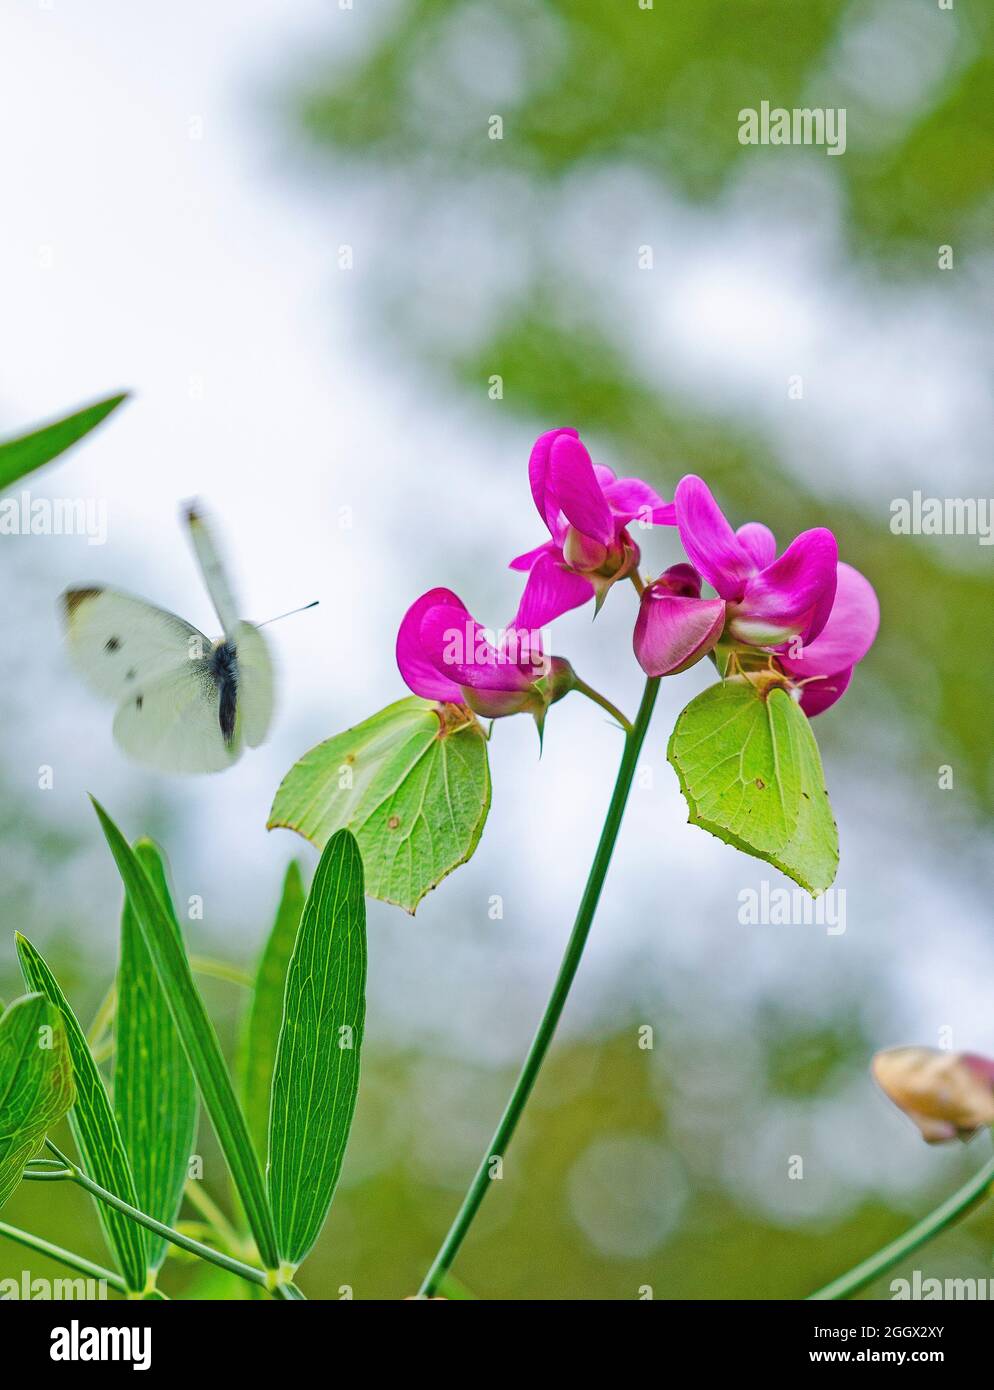 Brimstone butterflies on sweet pea flowers Stock Photo